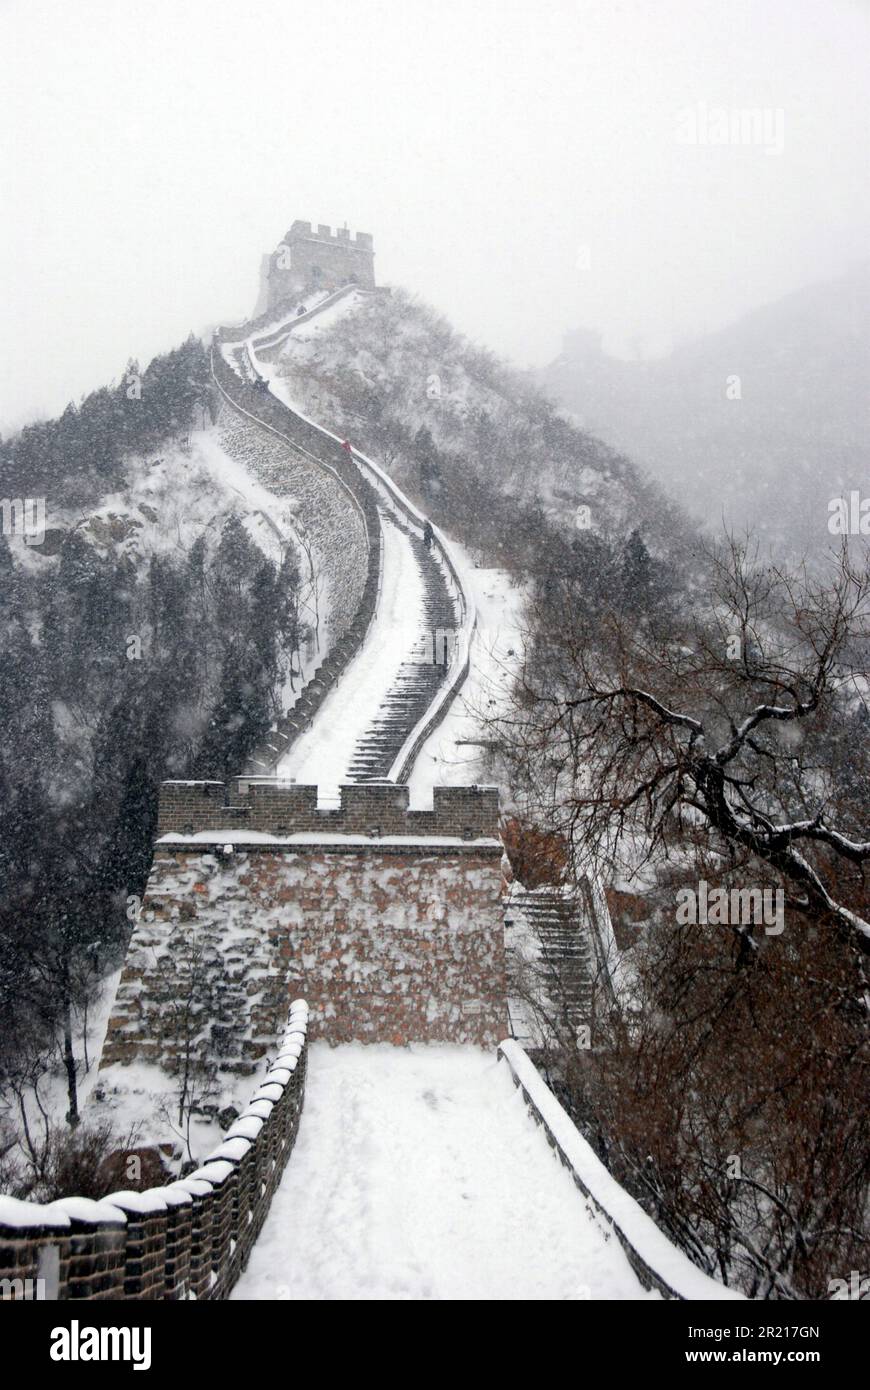 Pékin, Chine - de fortes chutes de neige frappent Pékin et les environs, provoquant des perturbations généralisées dans les transports ferroviaires, routiers et aériens. Les températures ont chuté jusqu'à -17 degrés Celsius. Scène pittoresque de la Grande Muraille de Chine à Juyongguan à environ 50 km au nord-ouest de Beijing Banque D'Images